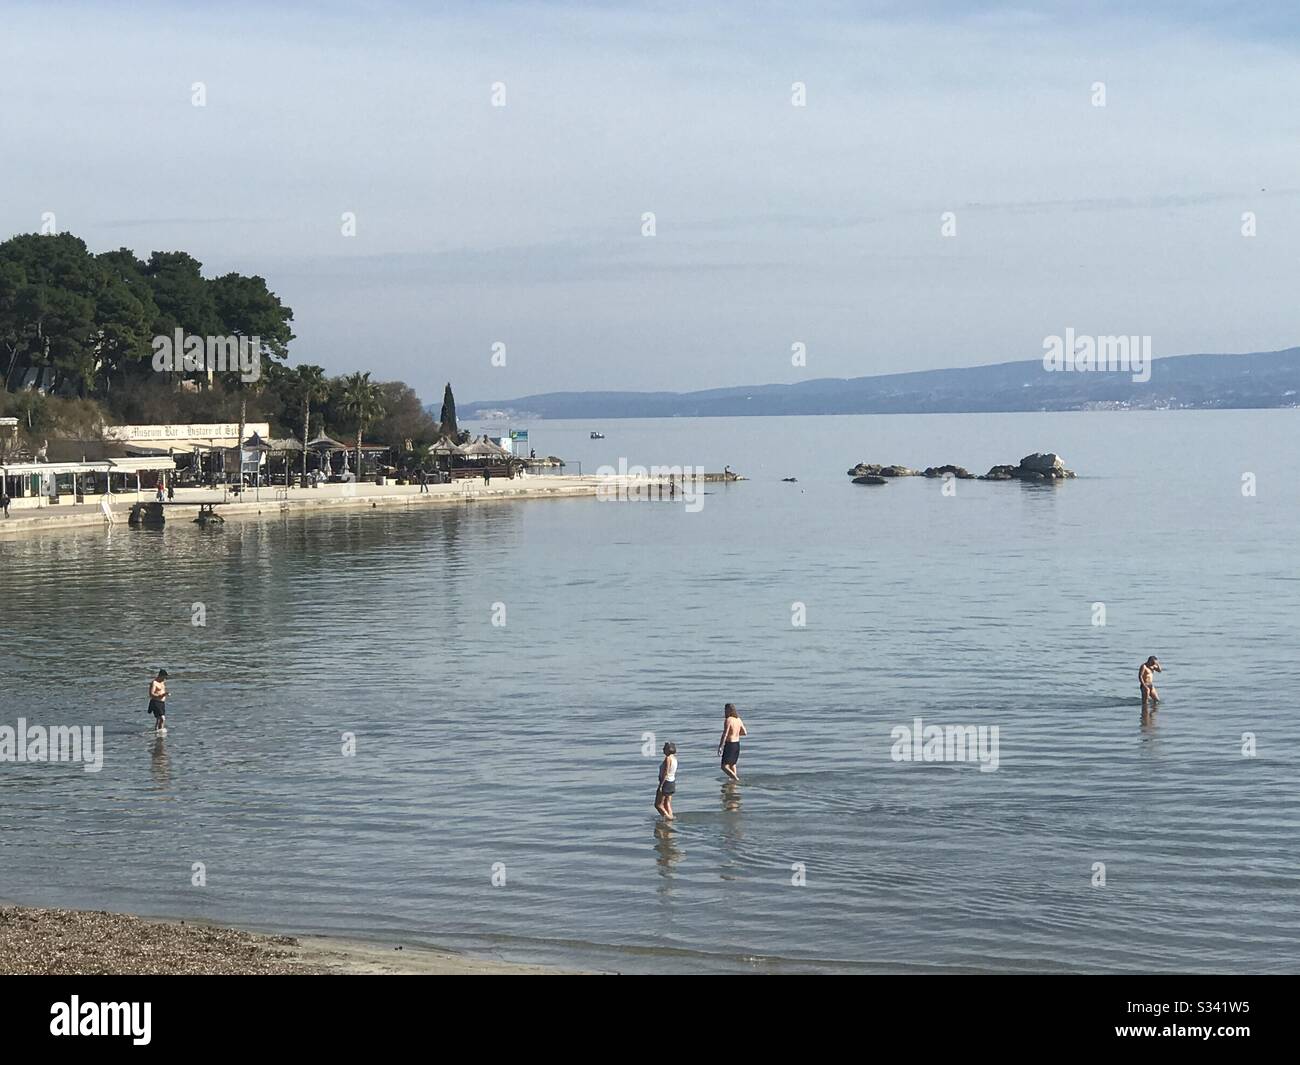 Les citoyens de Split, en Croatie, luttent contre le virus corona sur leur chemin: Passer du temps à la plage à 17 degrés Celsius Banque D'Images